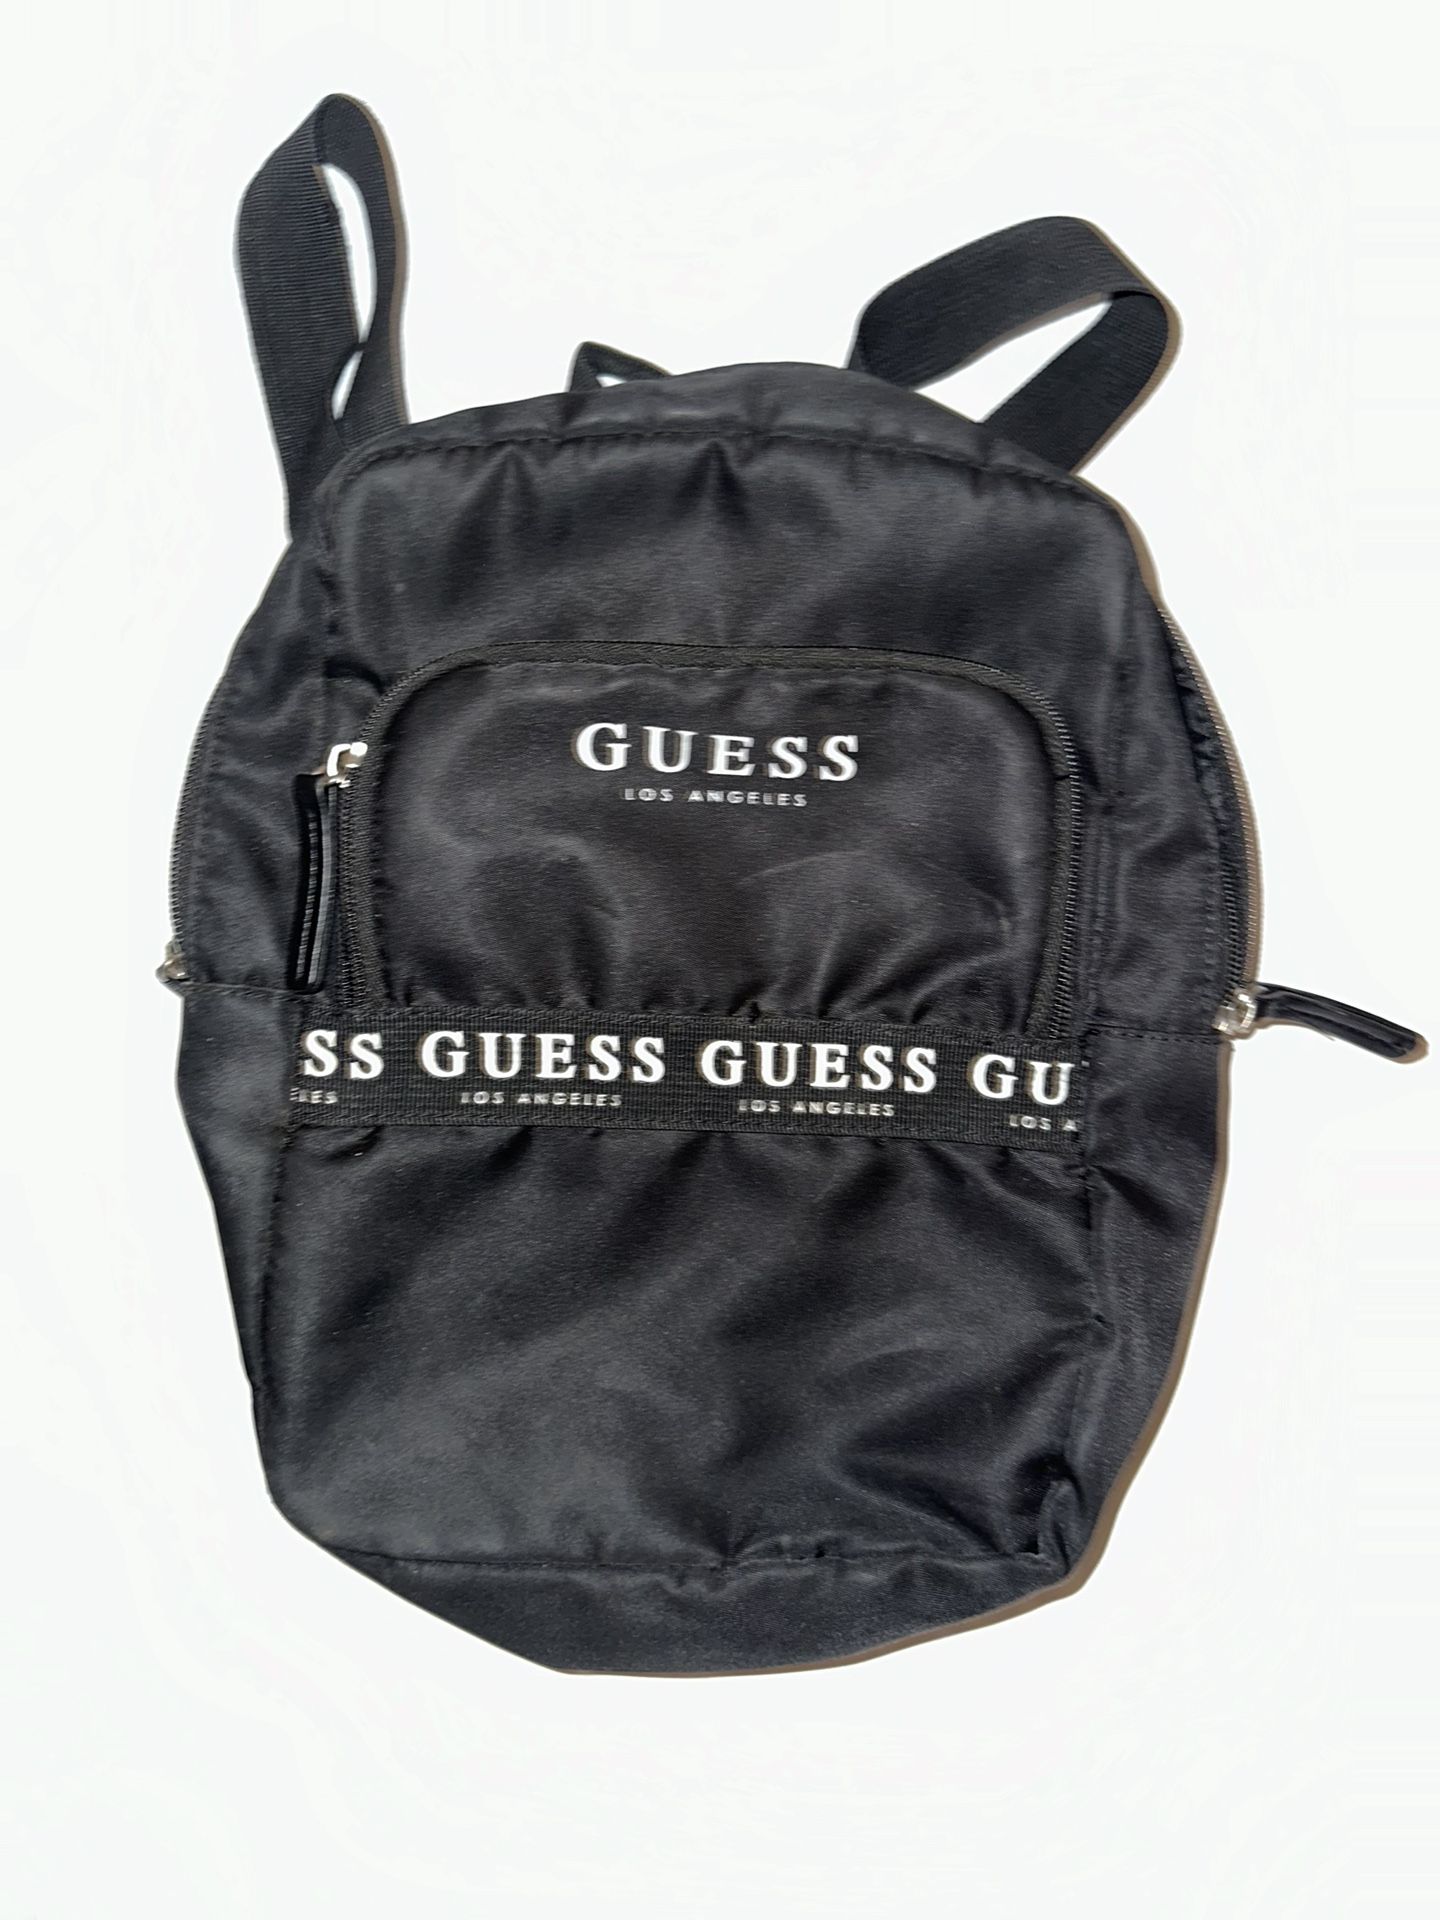 Guess Bag (Small)